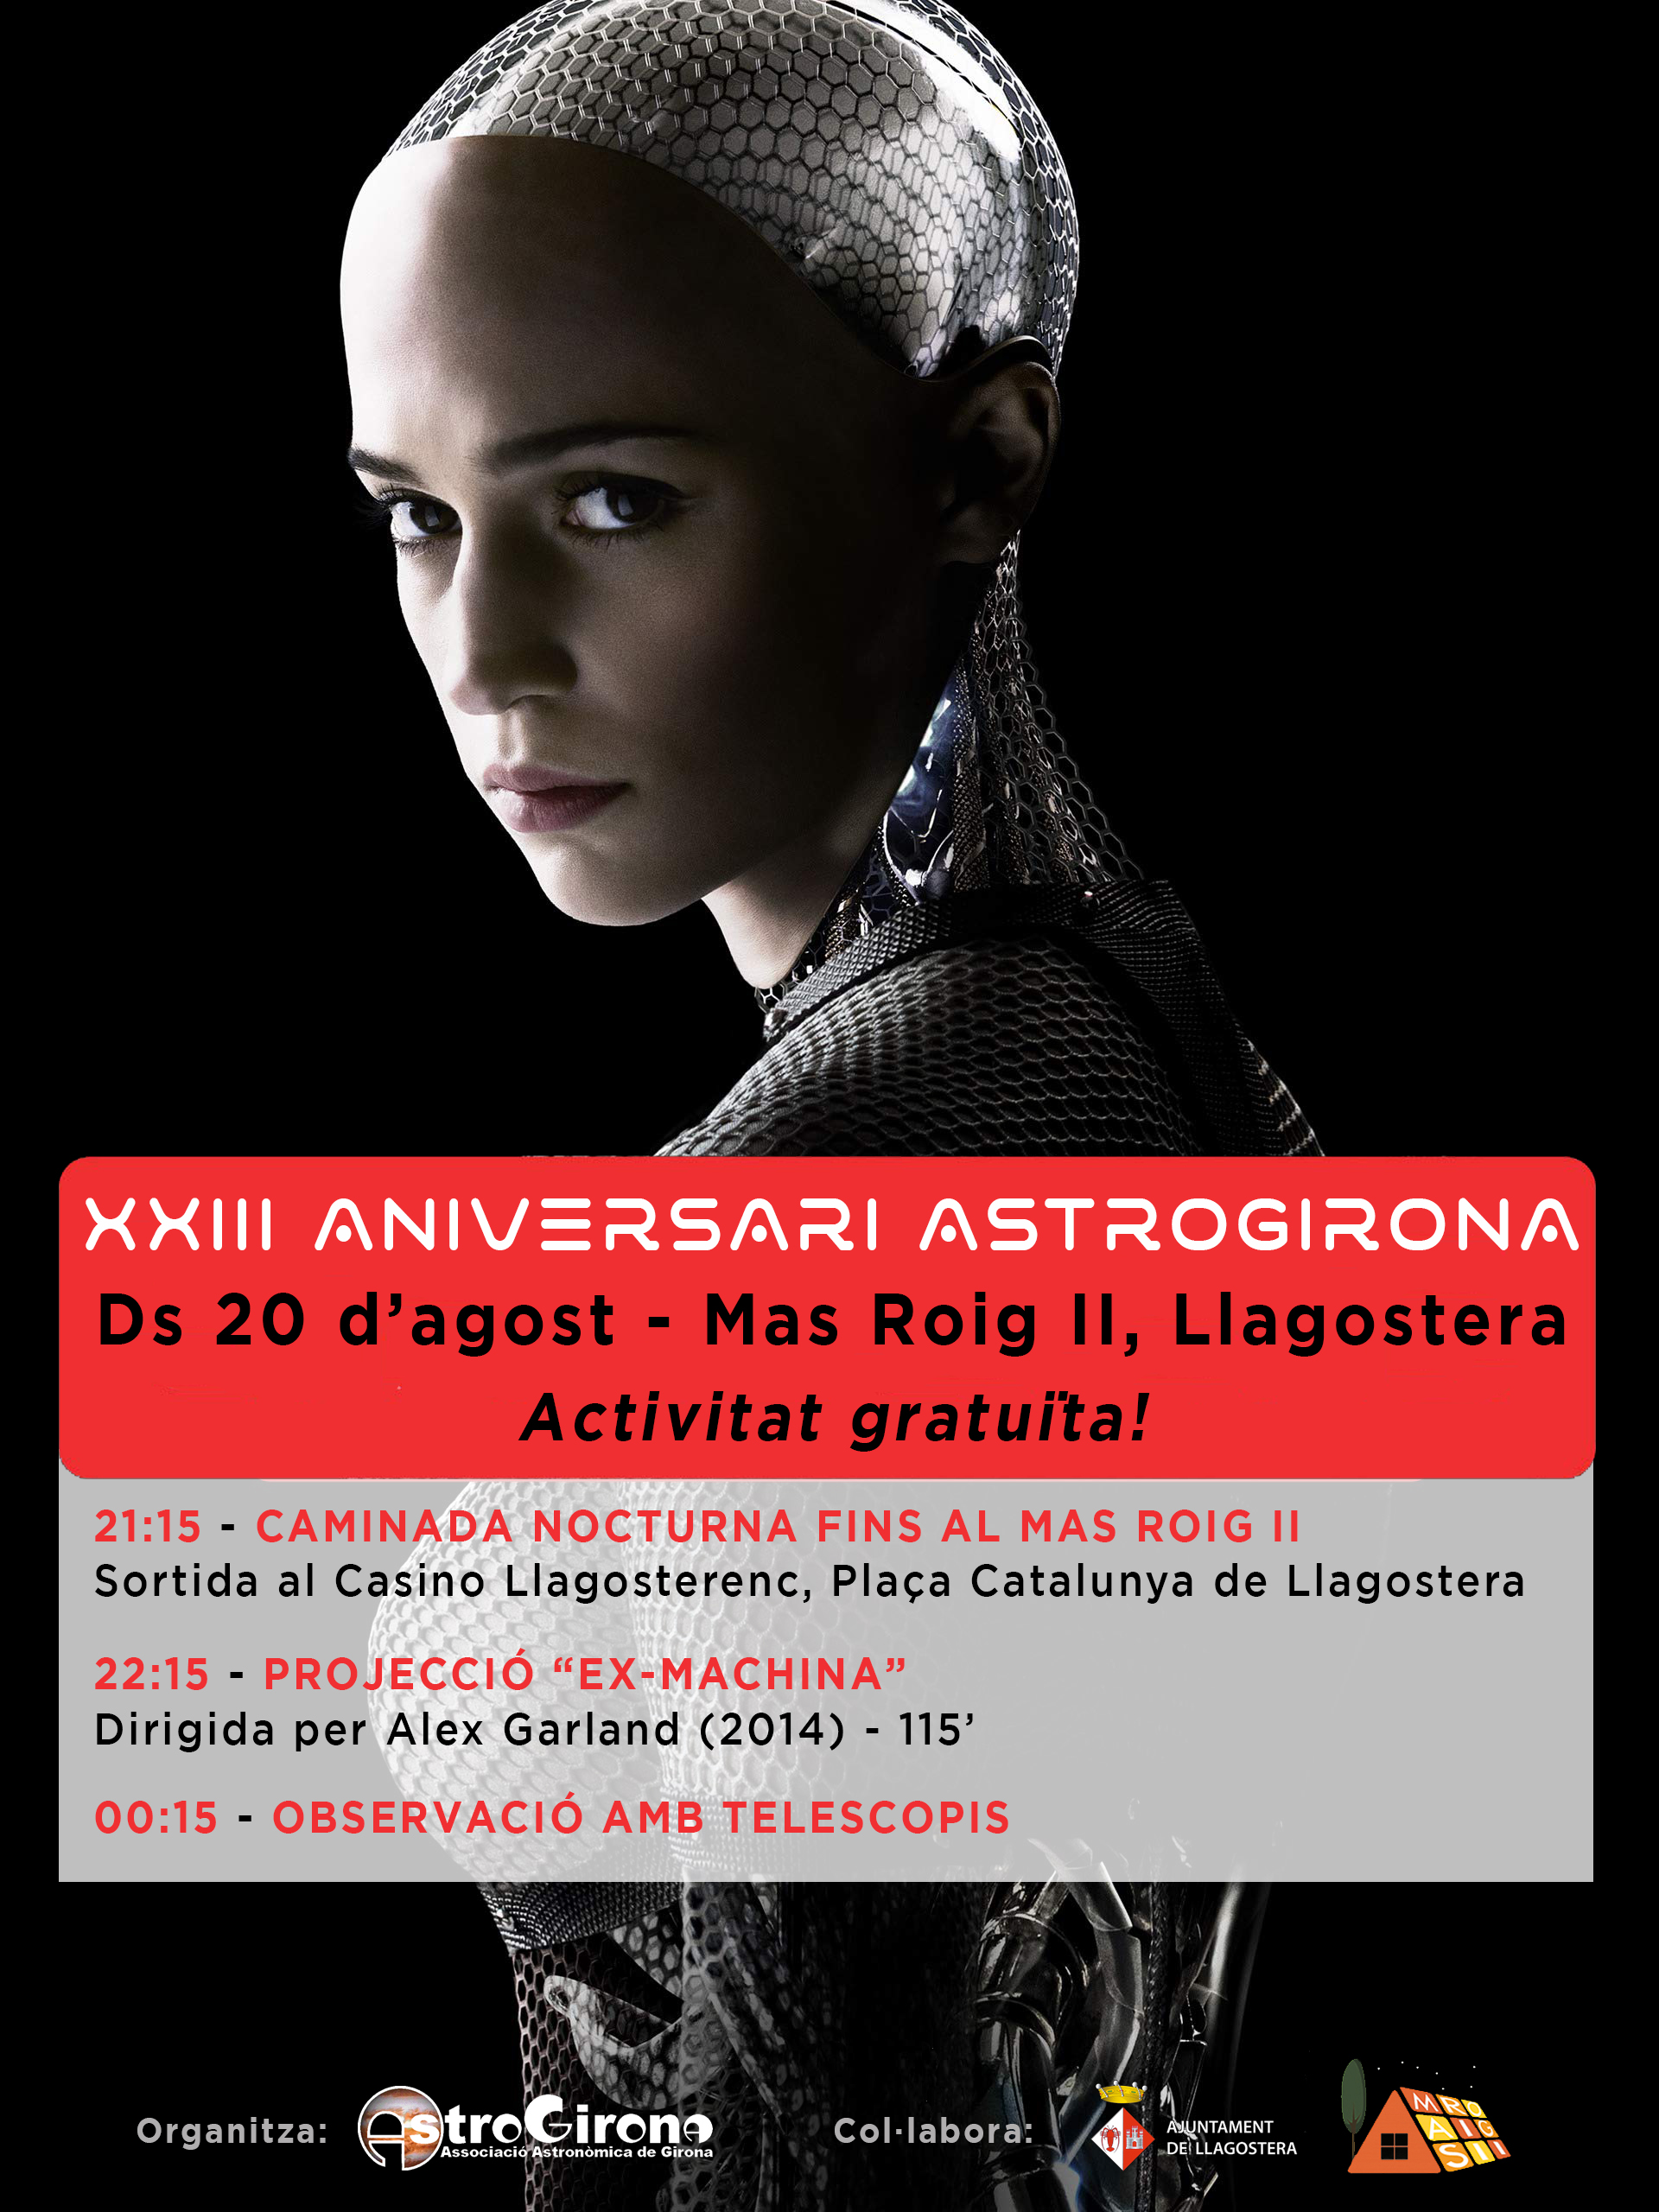 XXIII Aniversari d'Astrogirona @ Mas Roig II